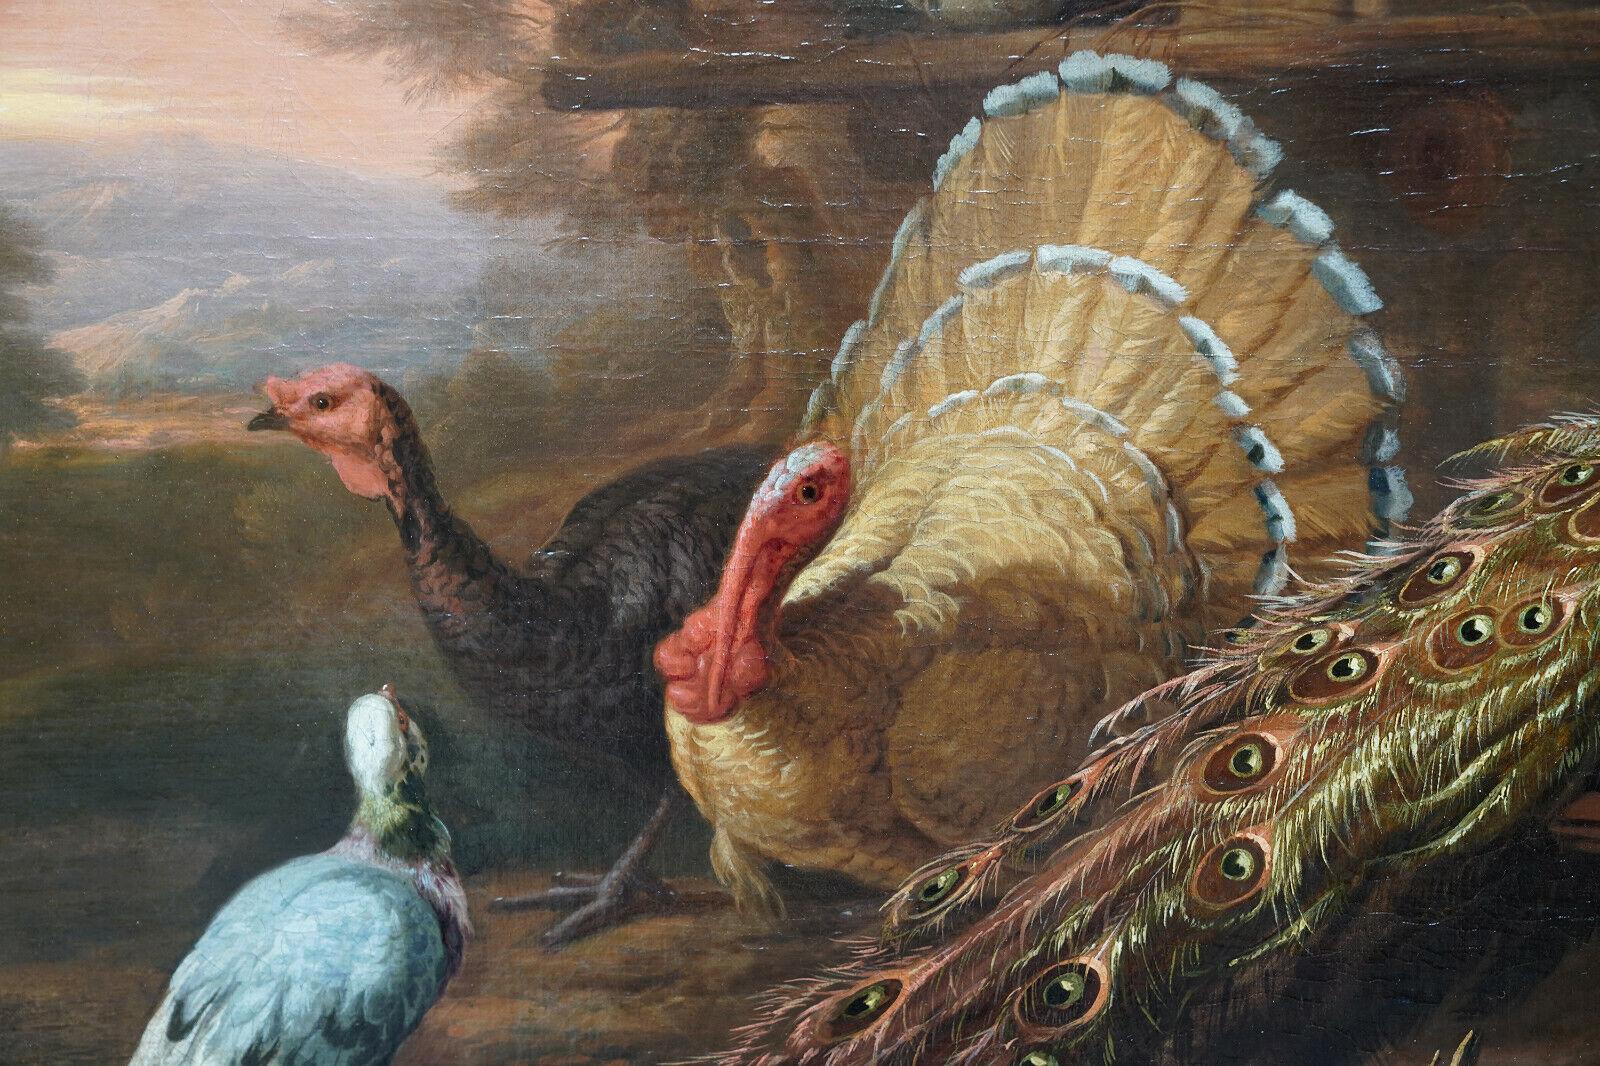 Pavo real y pájaros en un paisaje - Pintura al óleo sobre animales del Viejo Maestro británico del siglo XVII - Painting Antiguos maestros de Marmaduke Cradock